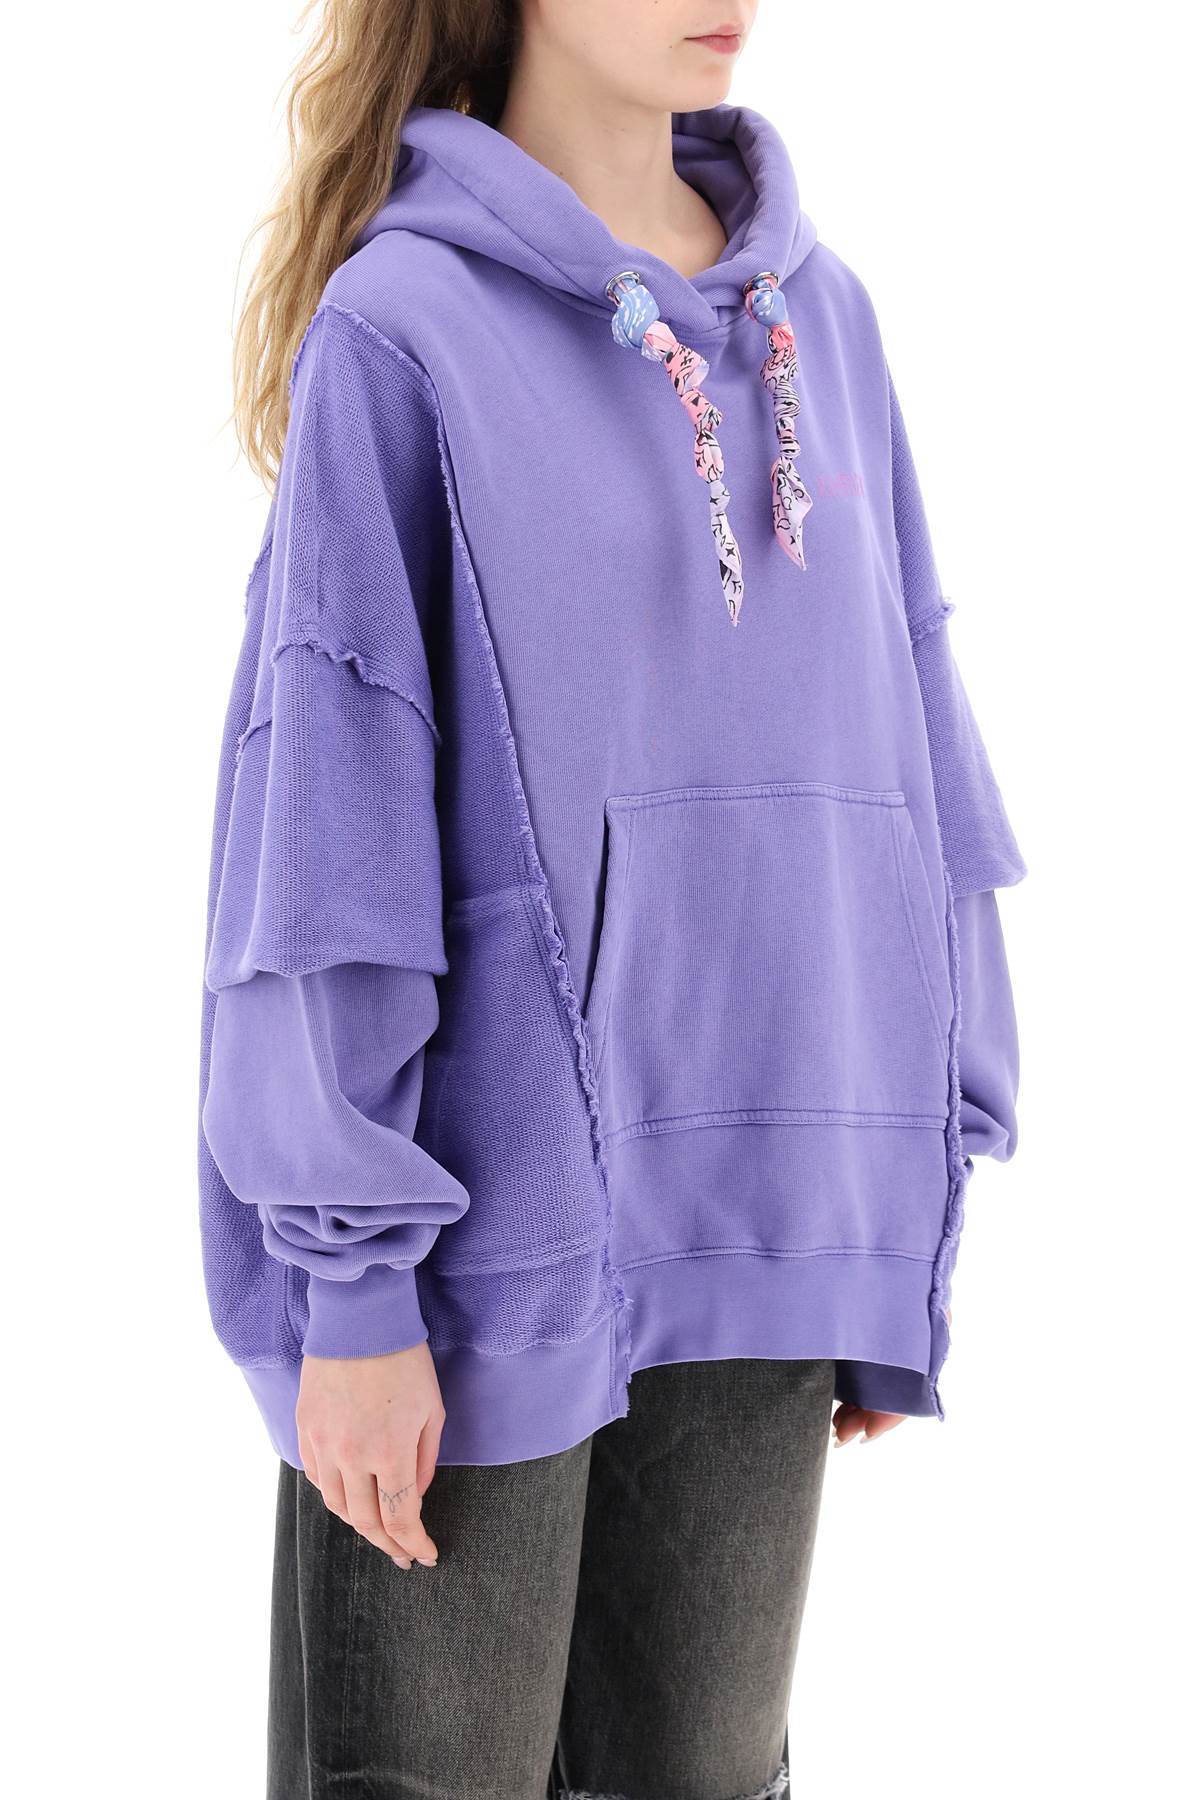 Shop Khrisjoy Oversized Hooded Sweatshirt In Wisteria (purple)